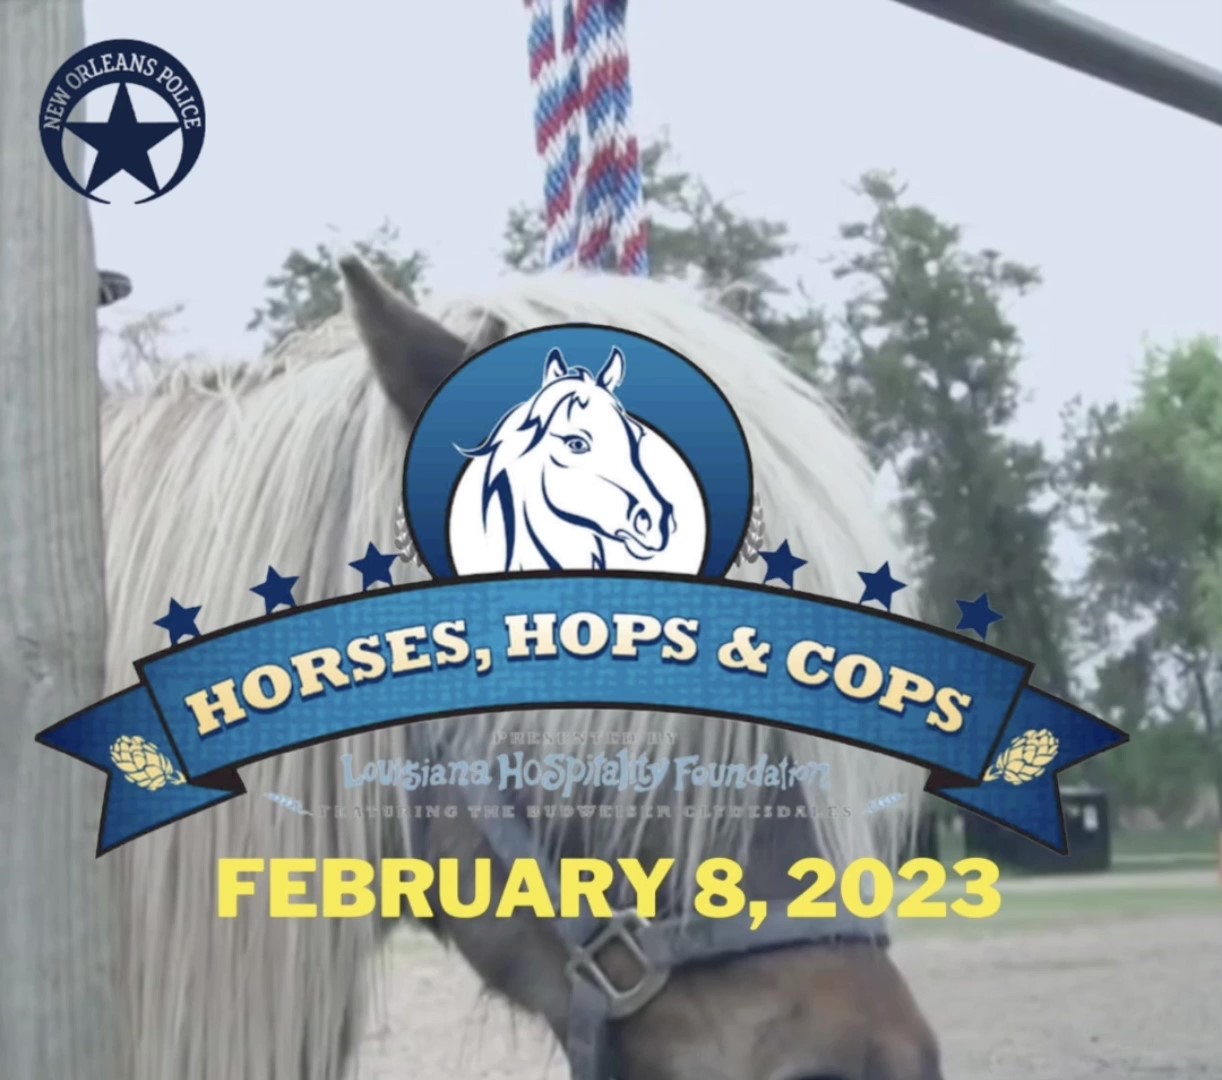 Horses, Hops & Cops Fundraiser Set for February 8, 2023